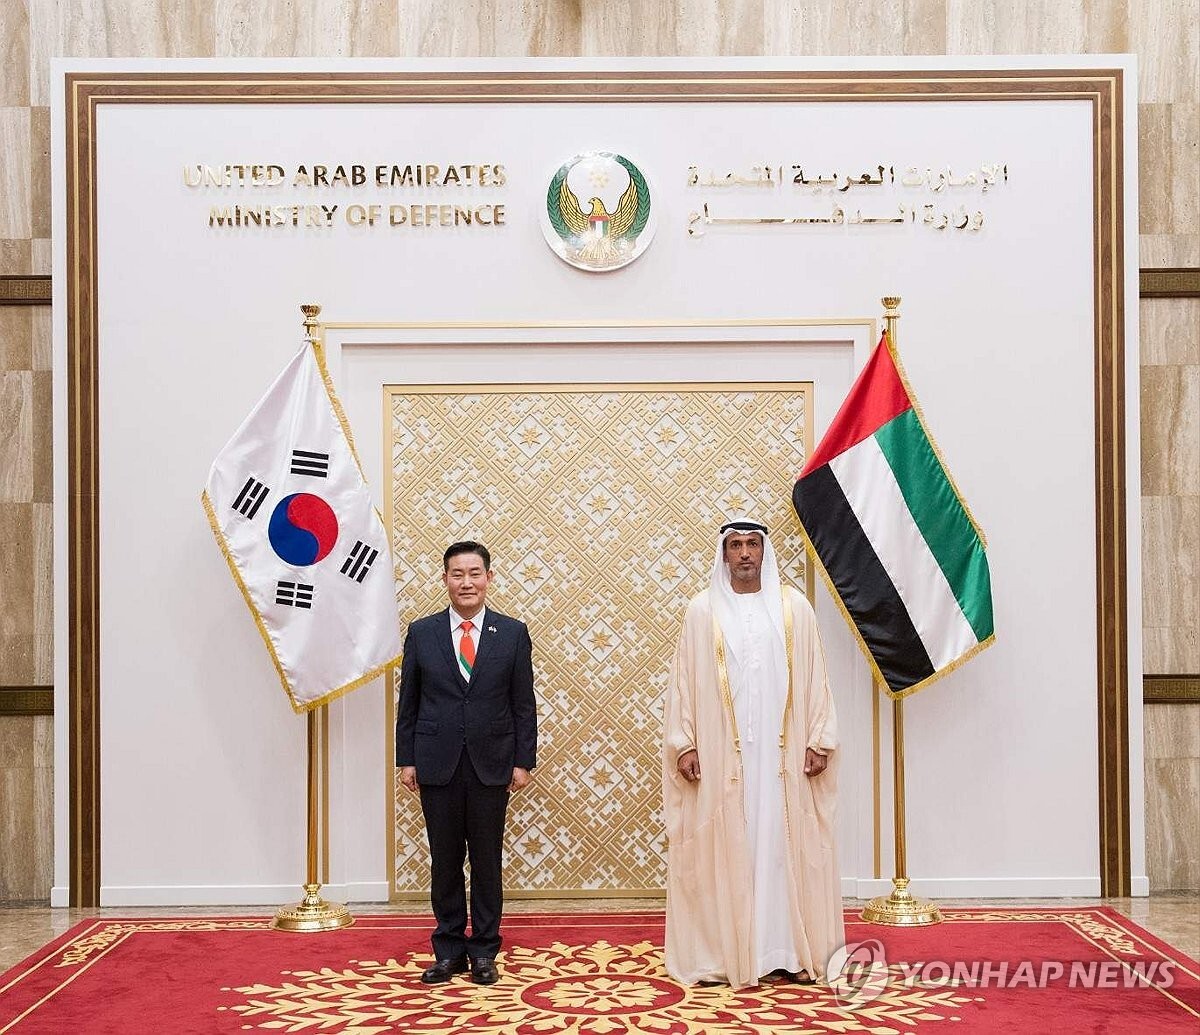 وزير الدفاع الكوري الجنوبي يفاجئ الإماراتيين بربطة عنق مميزة